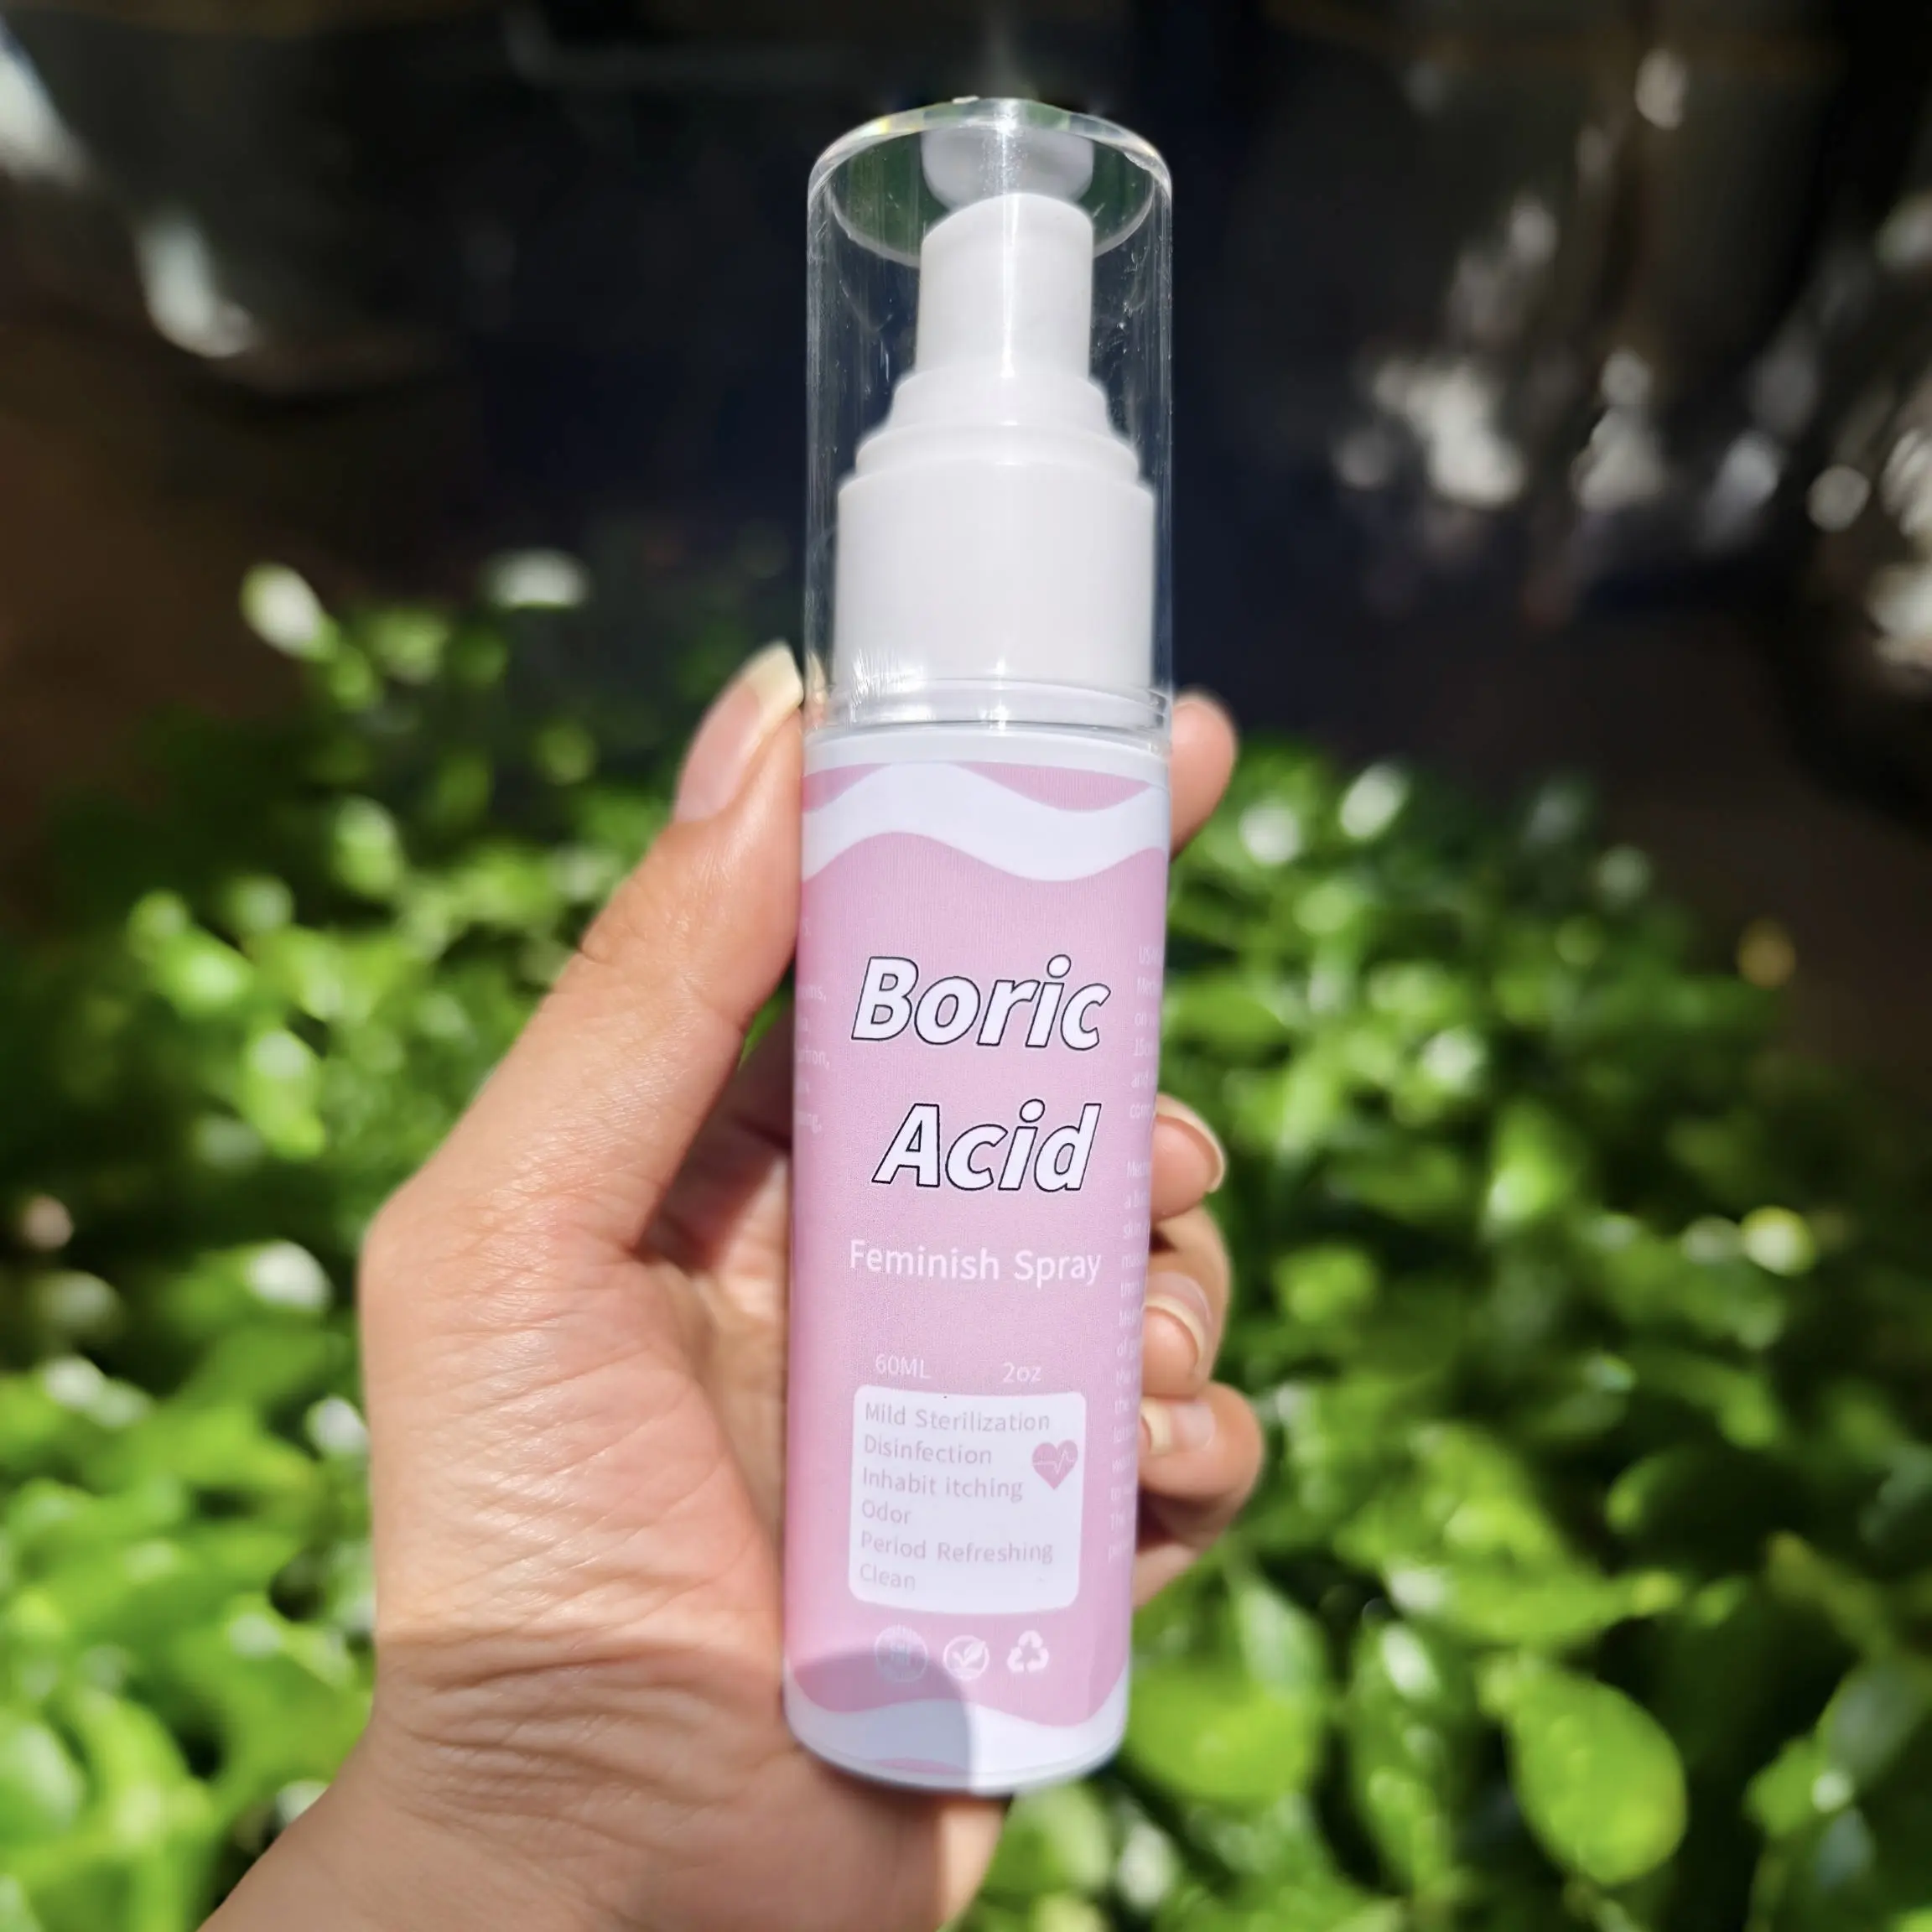 Higiene femenina lavado vaginal productos vaginales Etiqueta Privada Yoni spray de niebla para el cuidado íntimo femenino